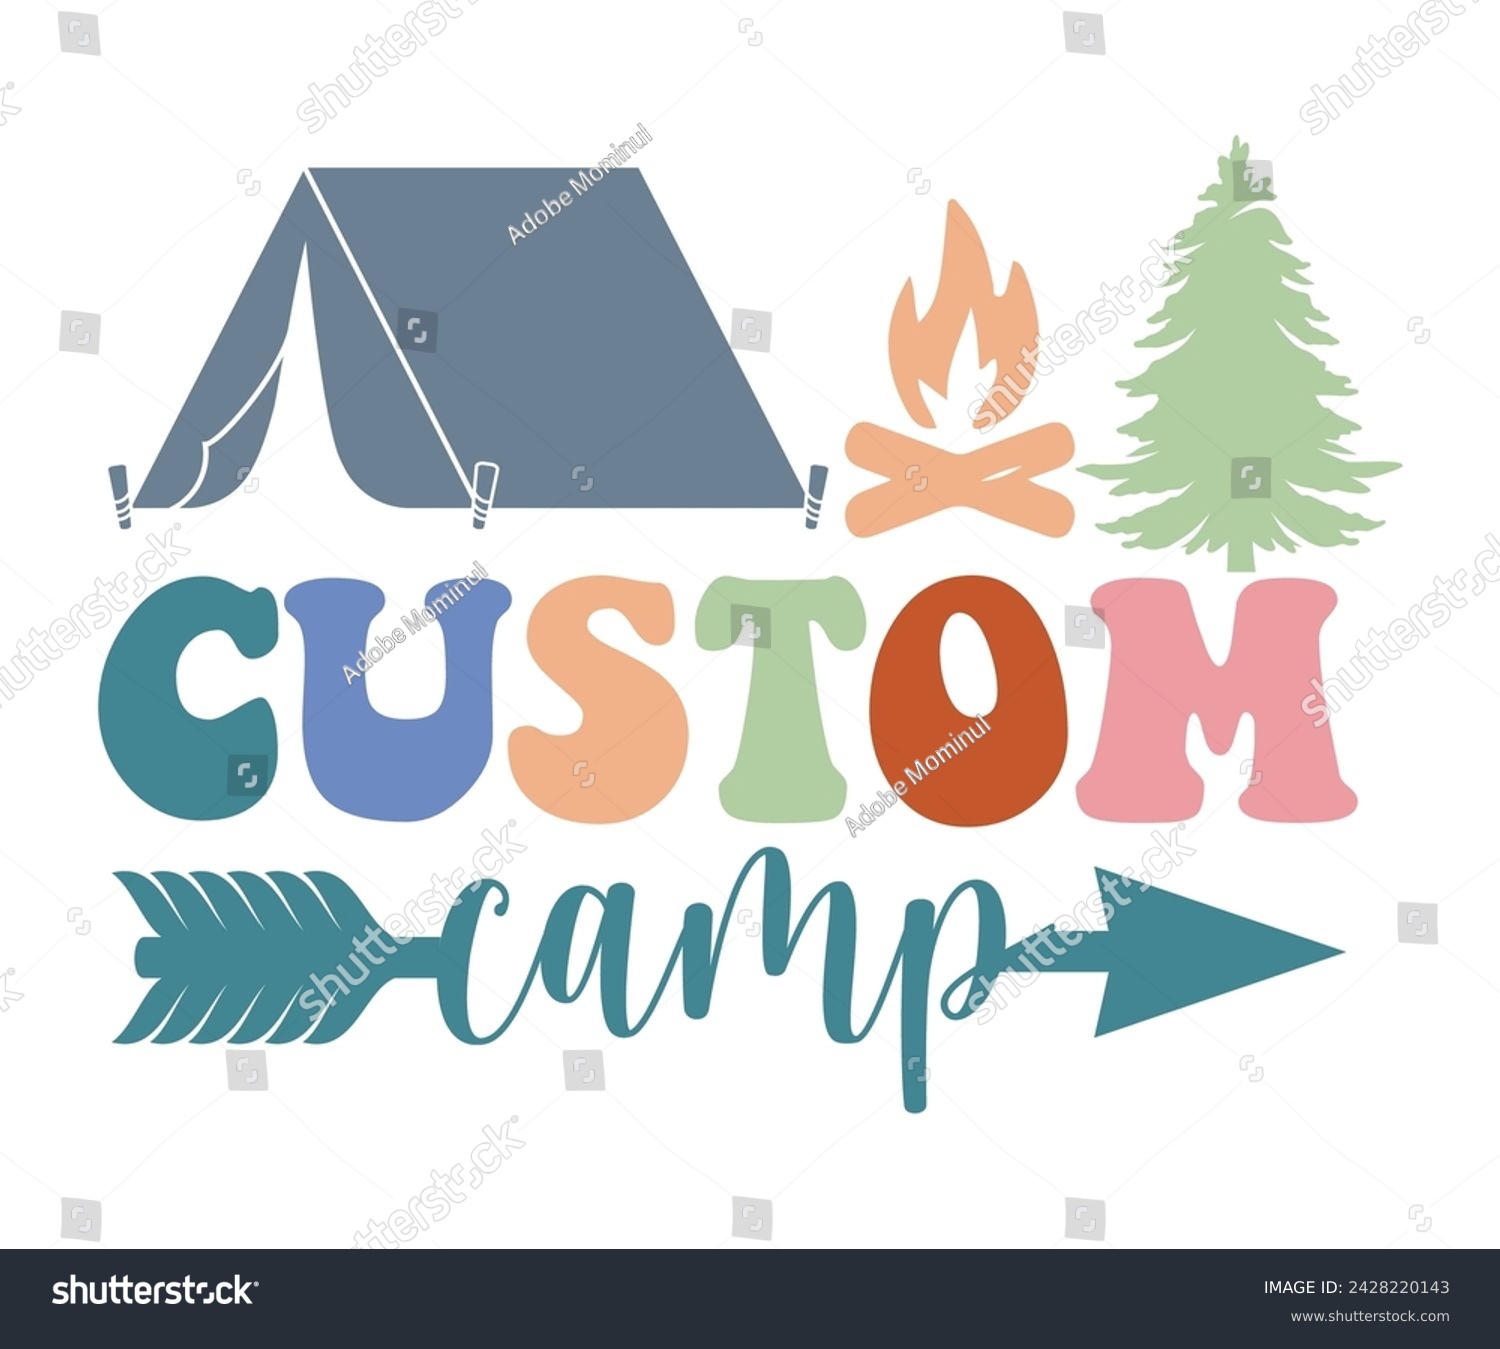 SVG of Custom Camp Svg,Happy Camper Svg,Camping Svg,Adventure Svg,Hiking Svg,Camp Saying,Camp Life Svg,Svg Cut Files, Png,Mountain T-shirt,Instant Download, svg